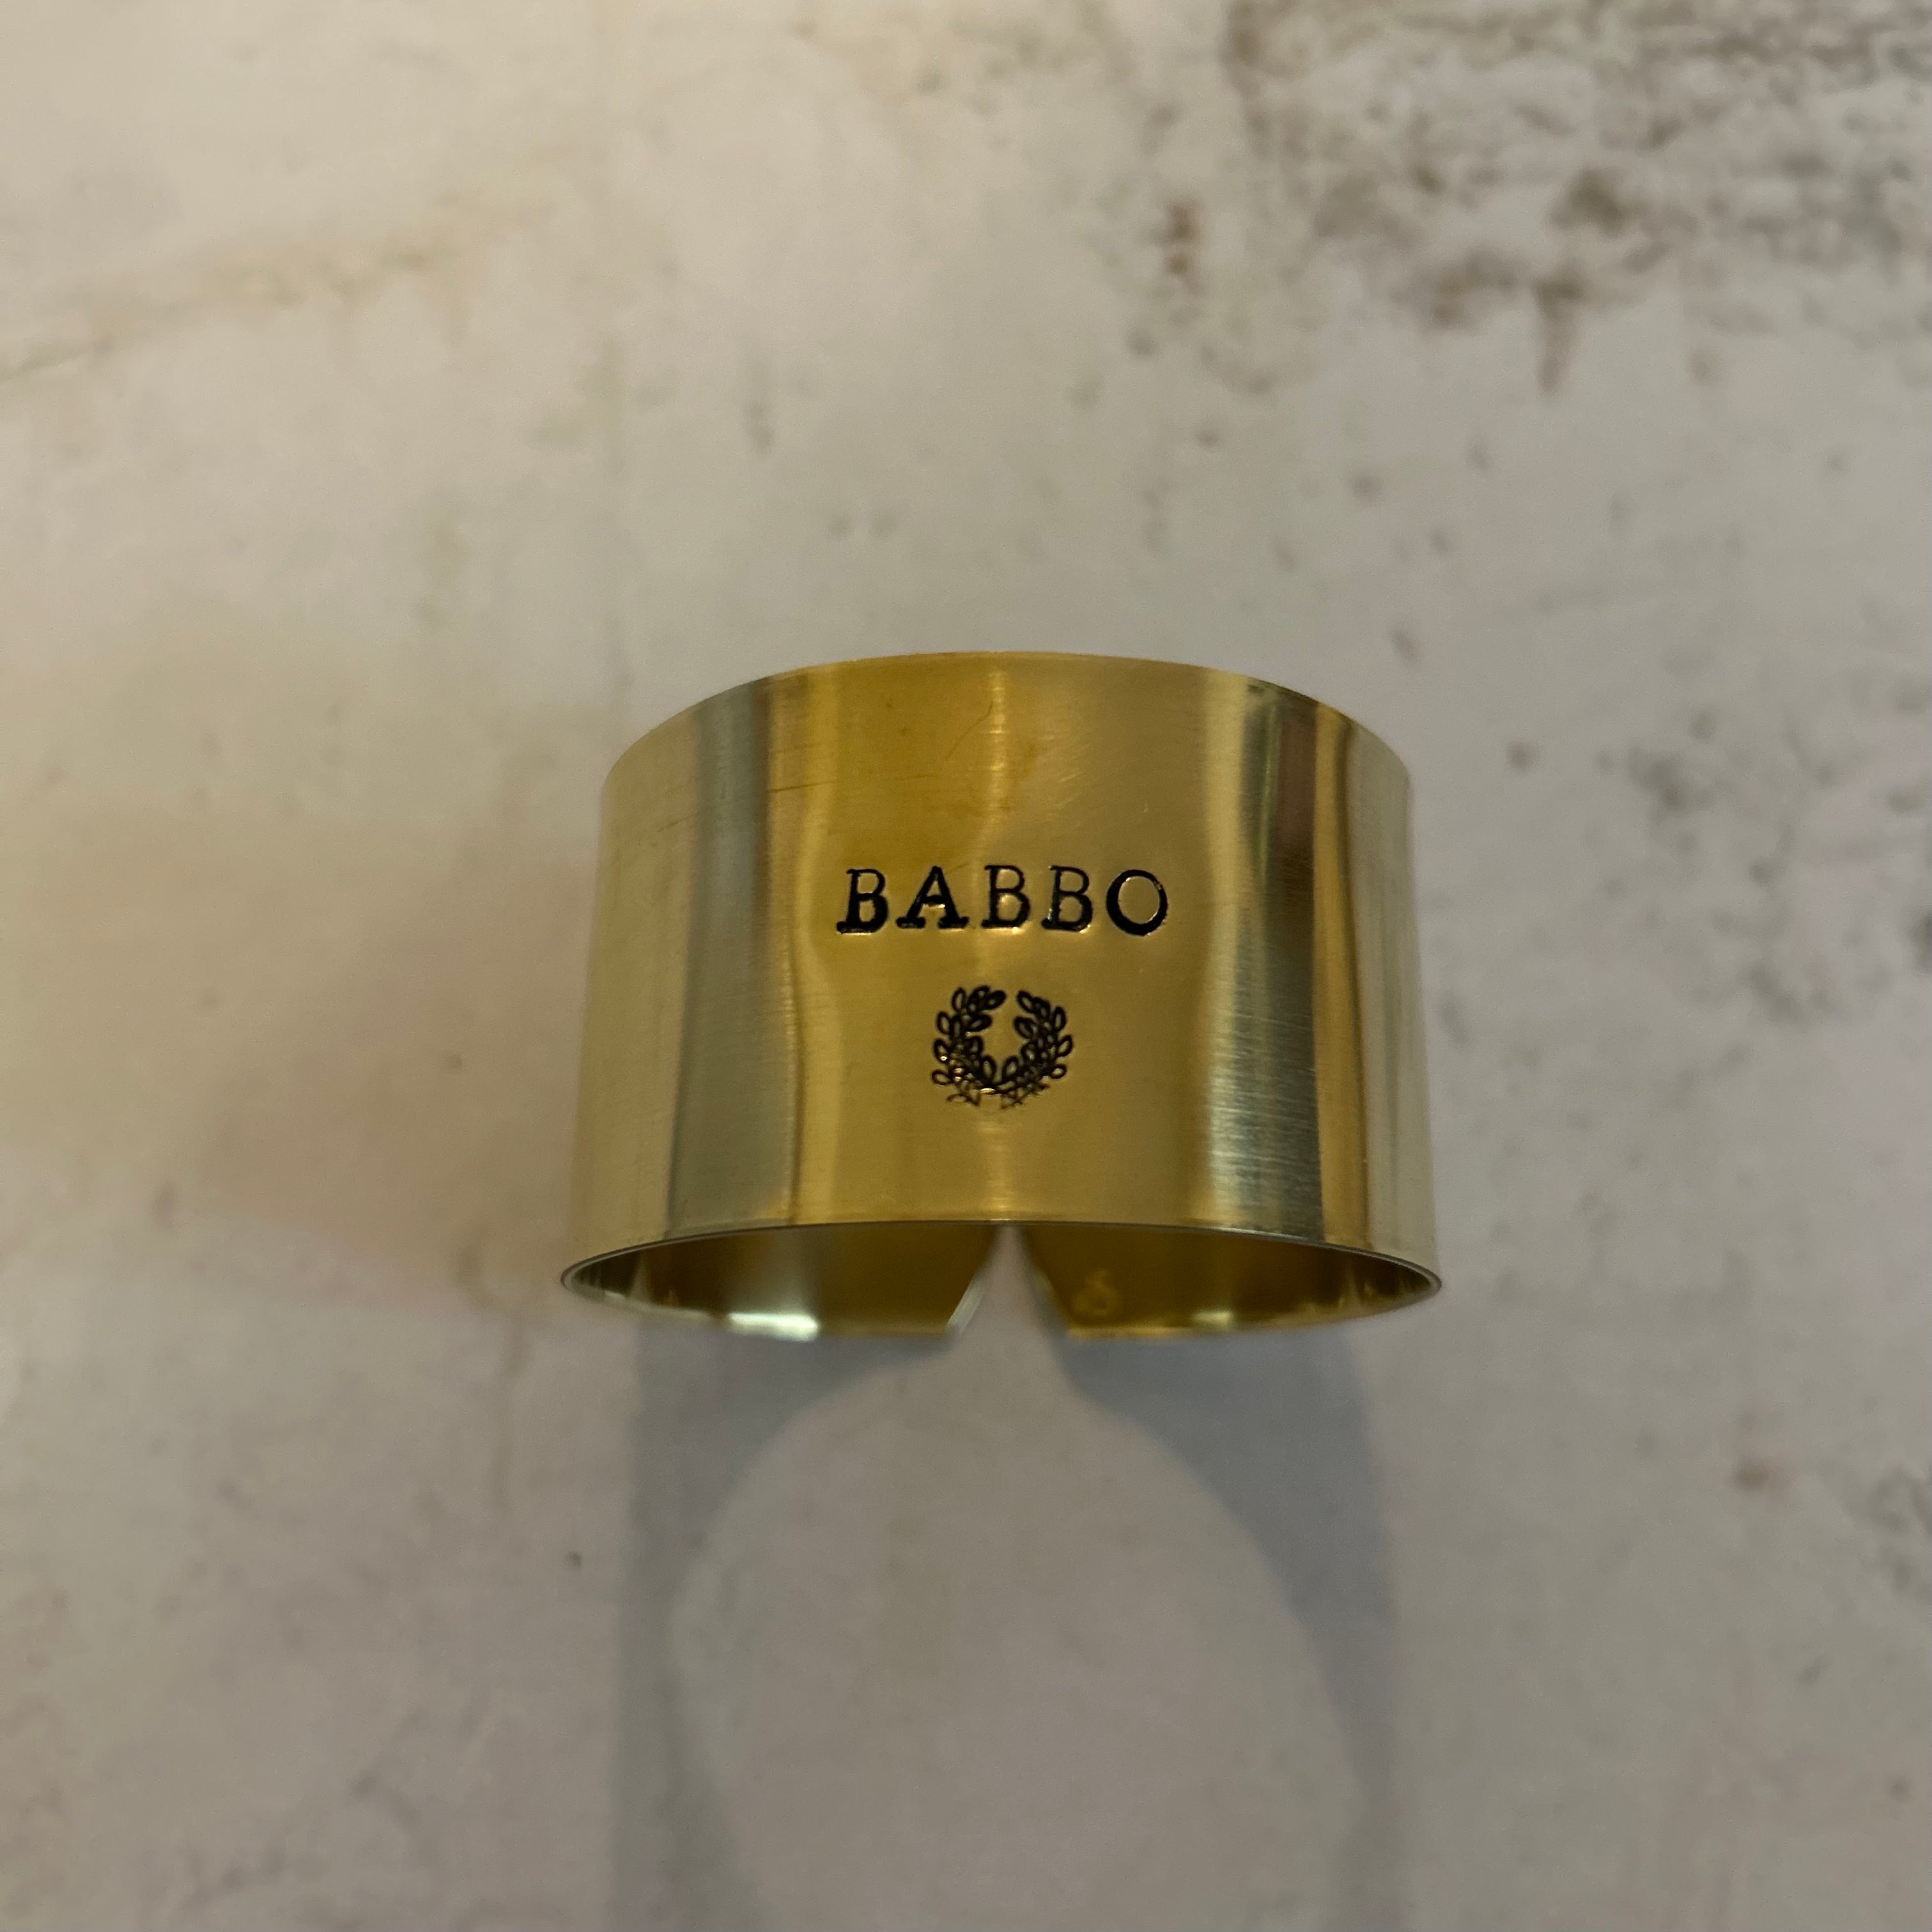 Collection oups - les imparfaits - «Babbo » avec couronne de laurier